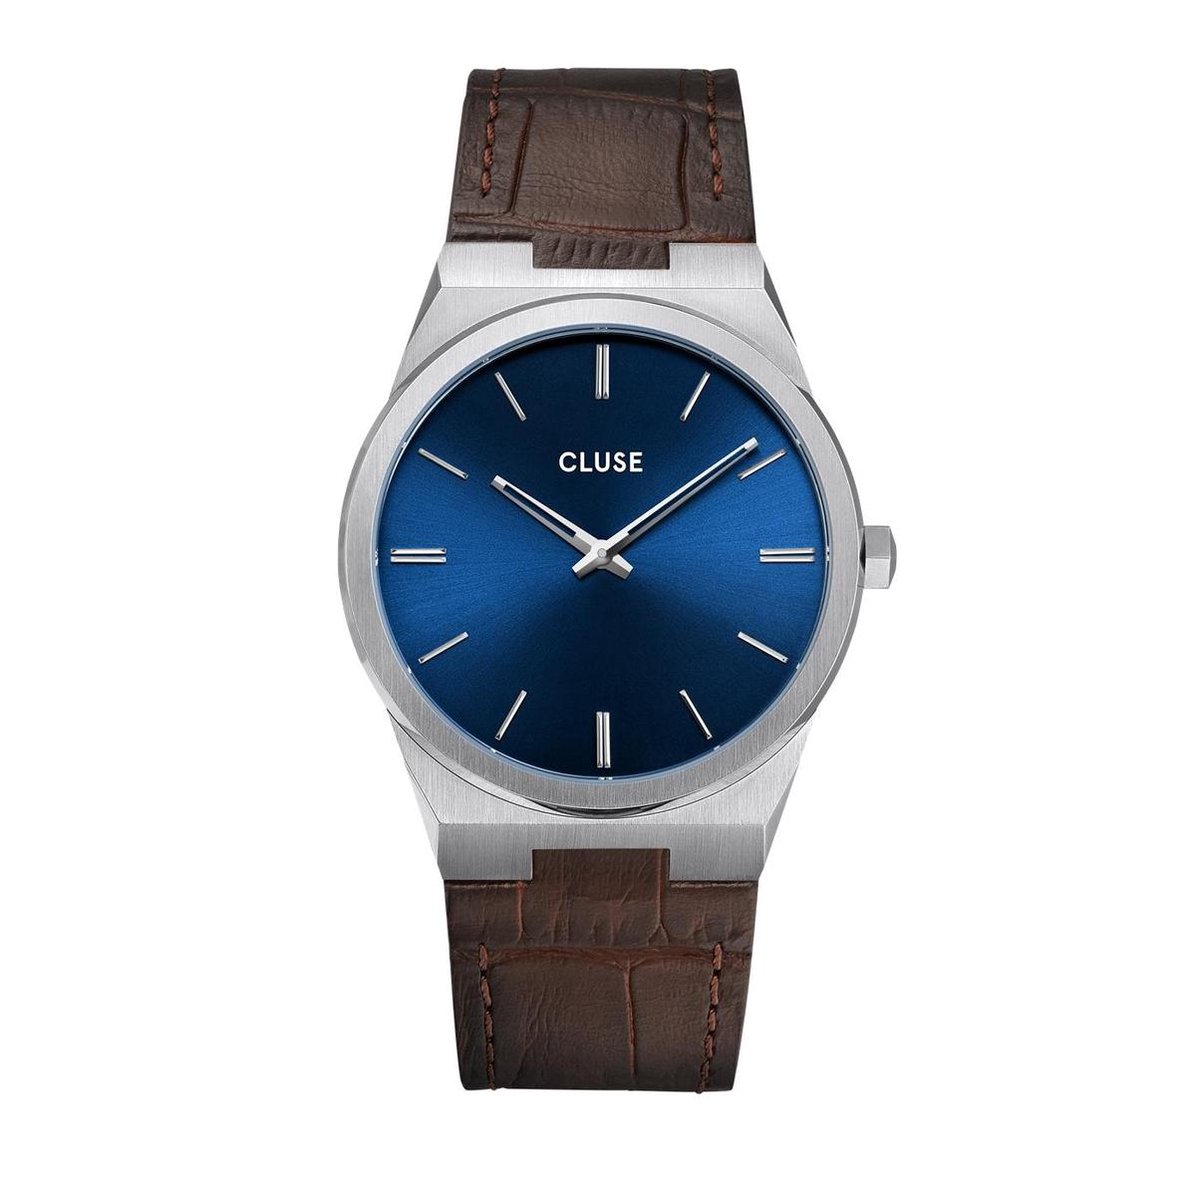 CLUSE Vigoureux Zilverkleurig-Blauw horloge - Bruin